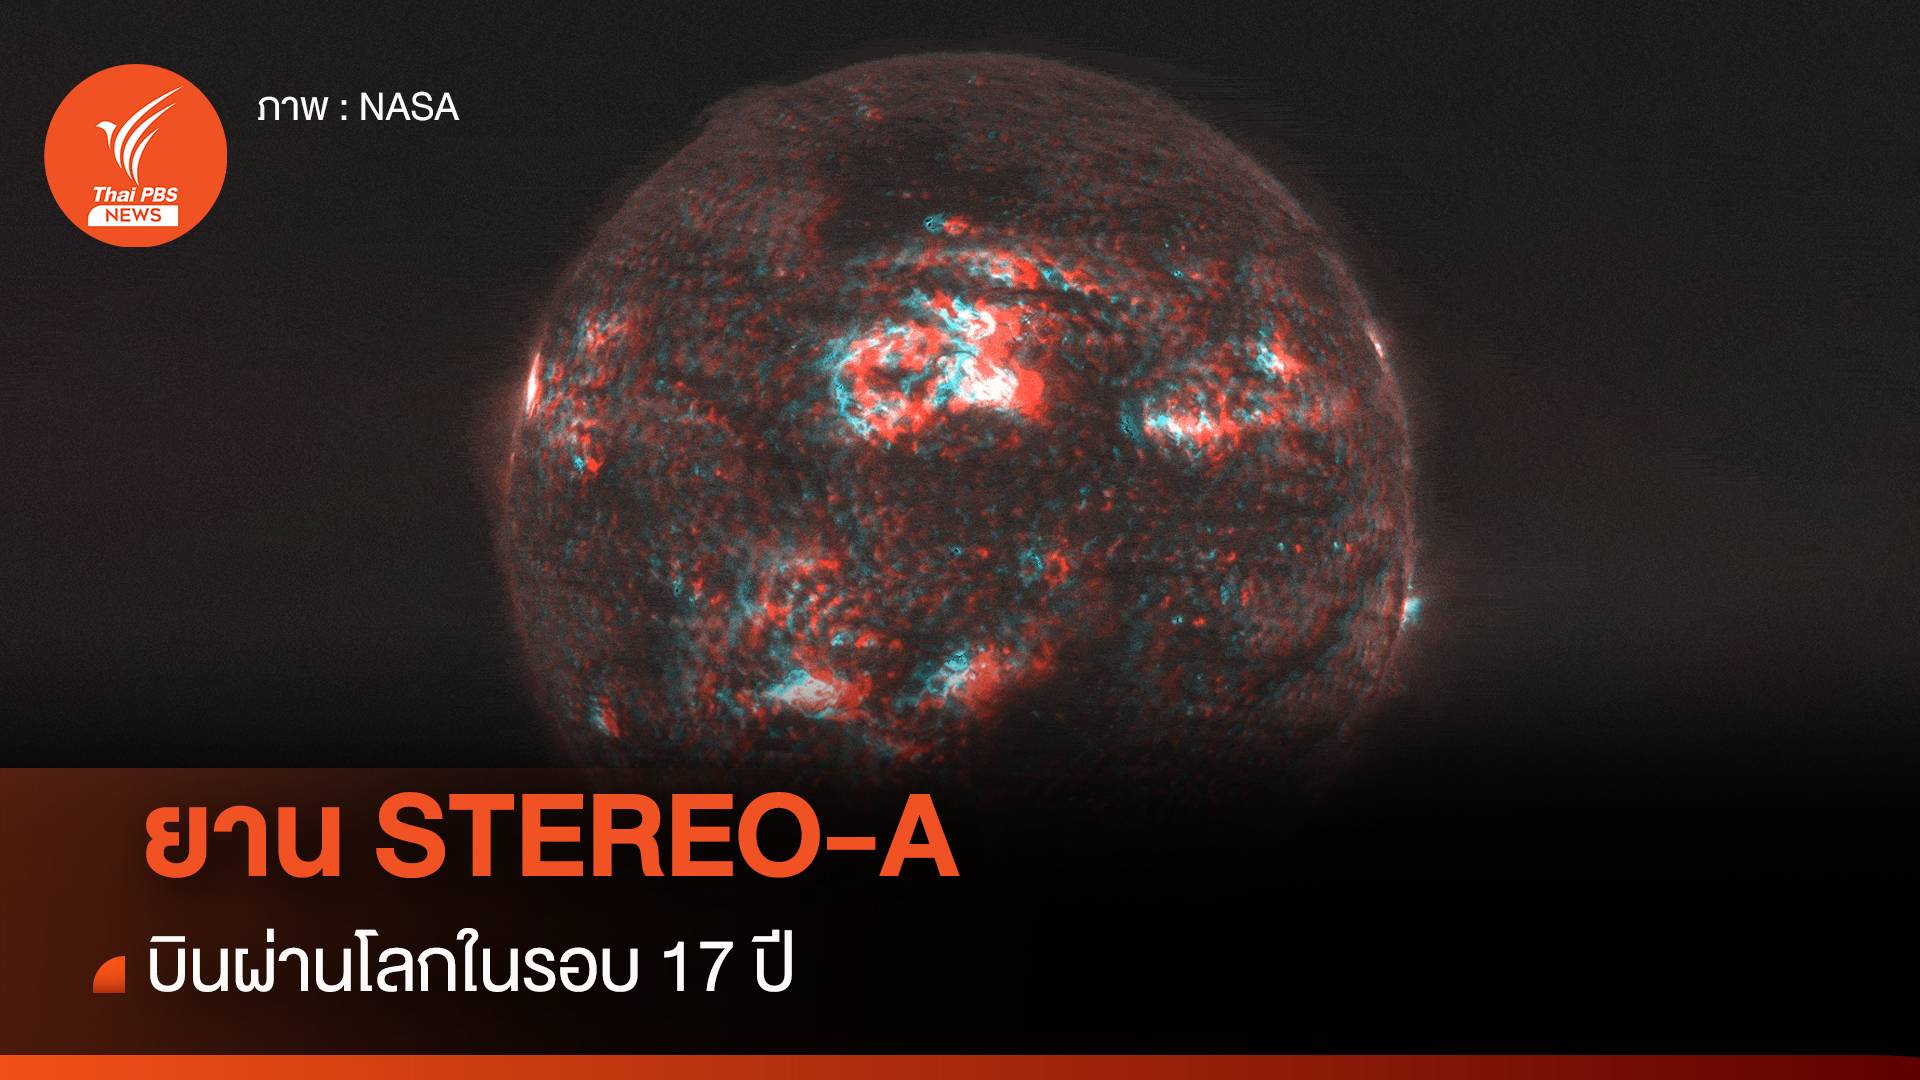 ยาน STEREO-A บินผ่านโลกในรอบ 17 ปี สำรวจดวงอาทิตย์ในวงโคจรใกล้โลก